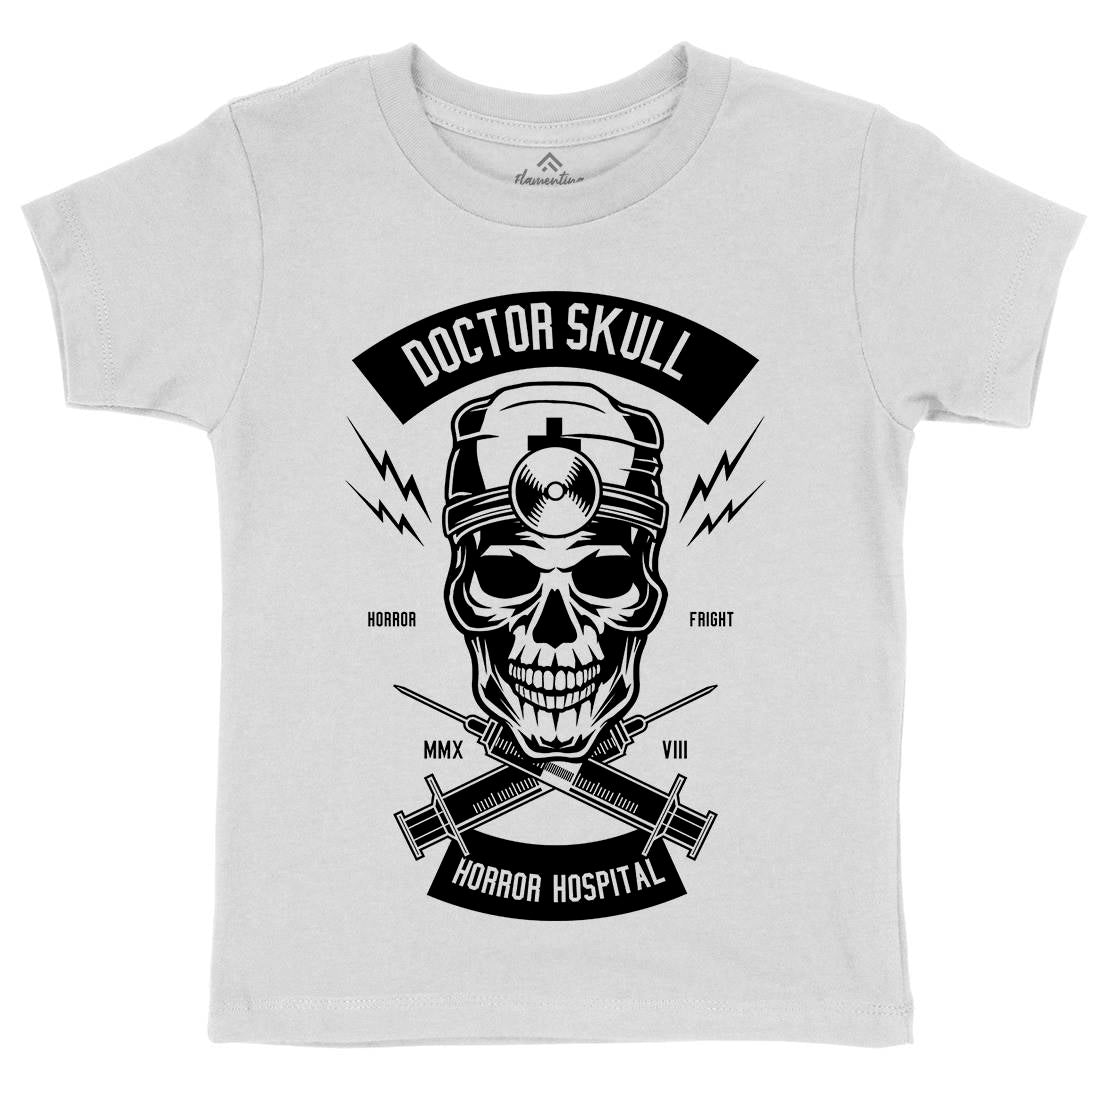 Doctor Skull Kids Crew Neck T-Shirt Horror B533